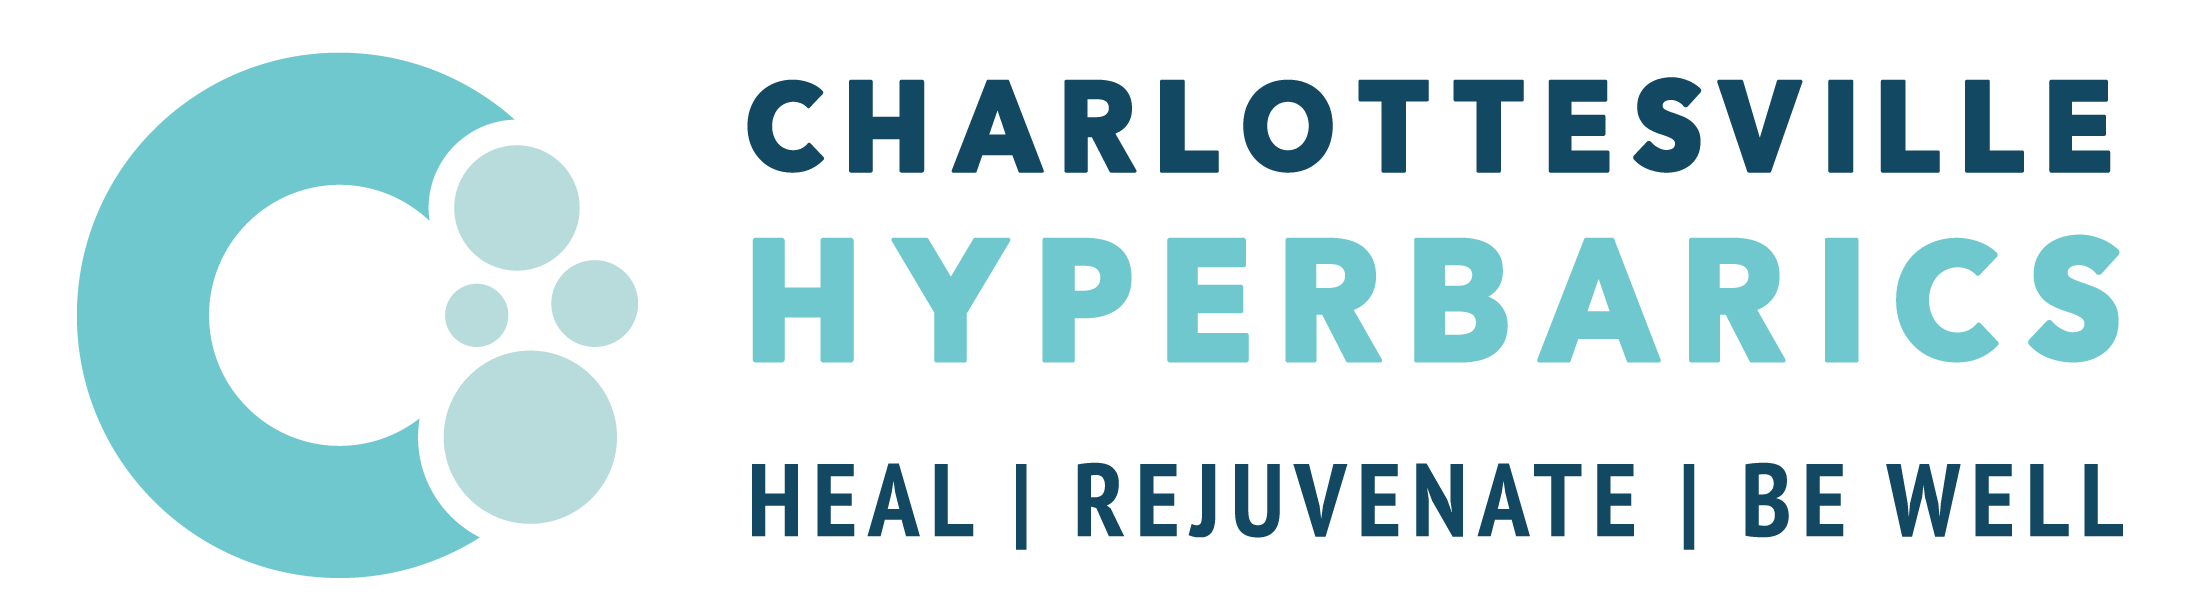 Charlottesville Hyperbarics